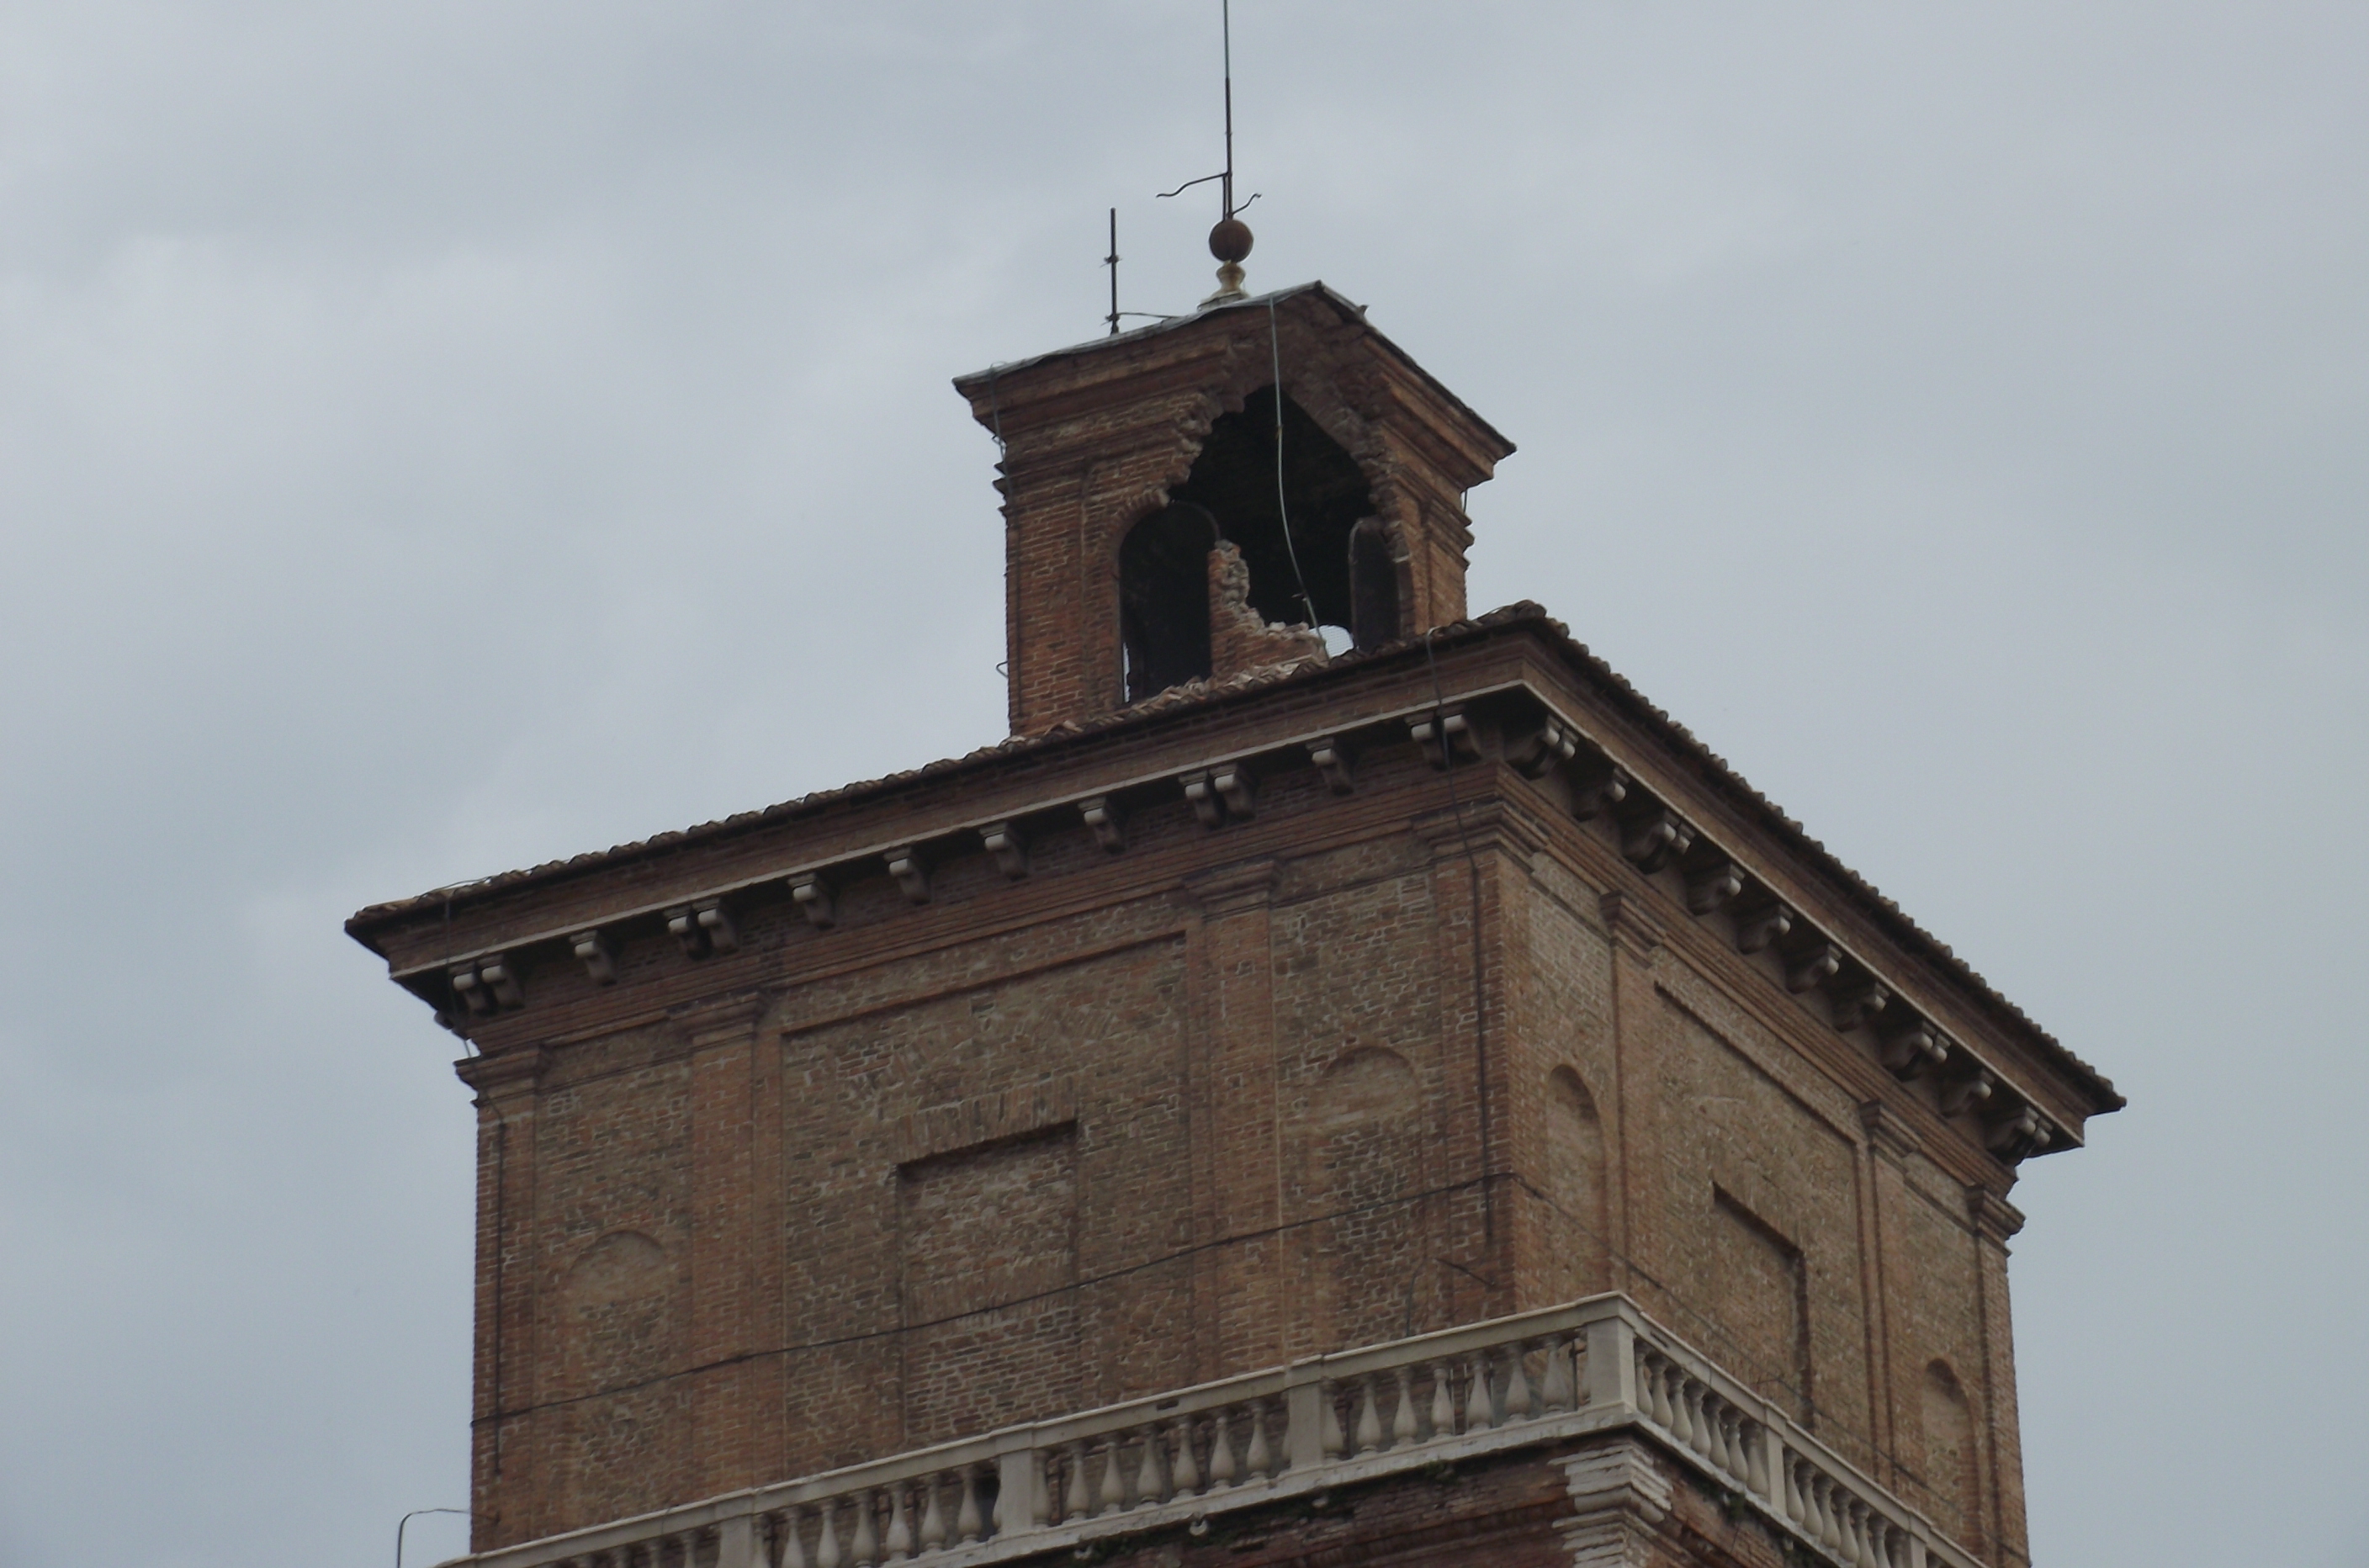 photo: https://upload.wikimedia.org/wikipedia/commons/e/e0/Danni_alla_torre_del_Leone_dopo_il_terremto_del_20_maggio_2012.JPG